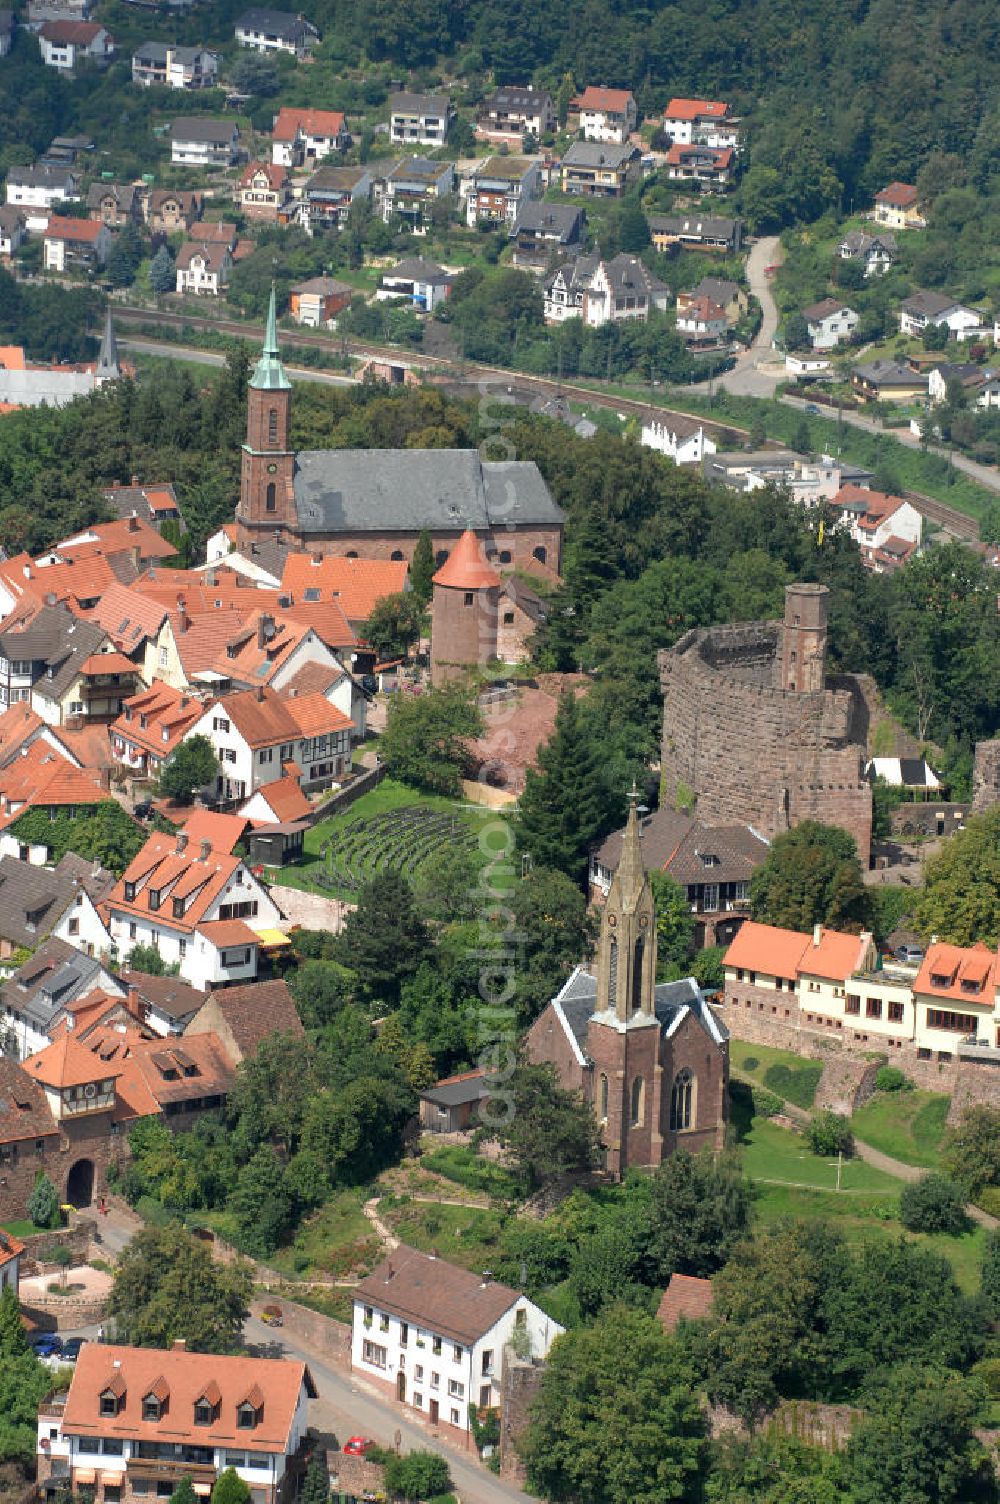 Aerial photograph Dilsberg - Blick auf die Burgruine Dilsberg, die vermutlich im 12. Jahrhundert auf dem gleichnamigen Berg errichtet wurde. Die Burg überstand mehrere Schlachten unbeschadet, wurde aber im 19. Jahrhundert zum Abbruch freigegeben. Die Burg war in Vor- und Hauptburg gegliedert. Noch erhalten ist die 16 m hohe, begebare Mantelmauer, der Treppenturm, Teile des Burgtores und das Kellergewölbe der Hauptburg, sowie die Stadtmauer. Ebenfalls zur Burg gehören ein Brunnen und ein 78 m langer Stollen, sowie zahlreiche historische Wohngebäude. Heute ist die Ruine die touristische Hauptatraktion der Gemeinde Dilsberg. Kontakt: Burg Dilsberg, Andreas Weber, 69051 Heidelberg, info@burg-dilsberg.de, Tel. 06223 / 4877289